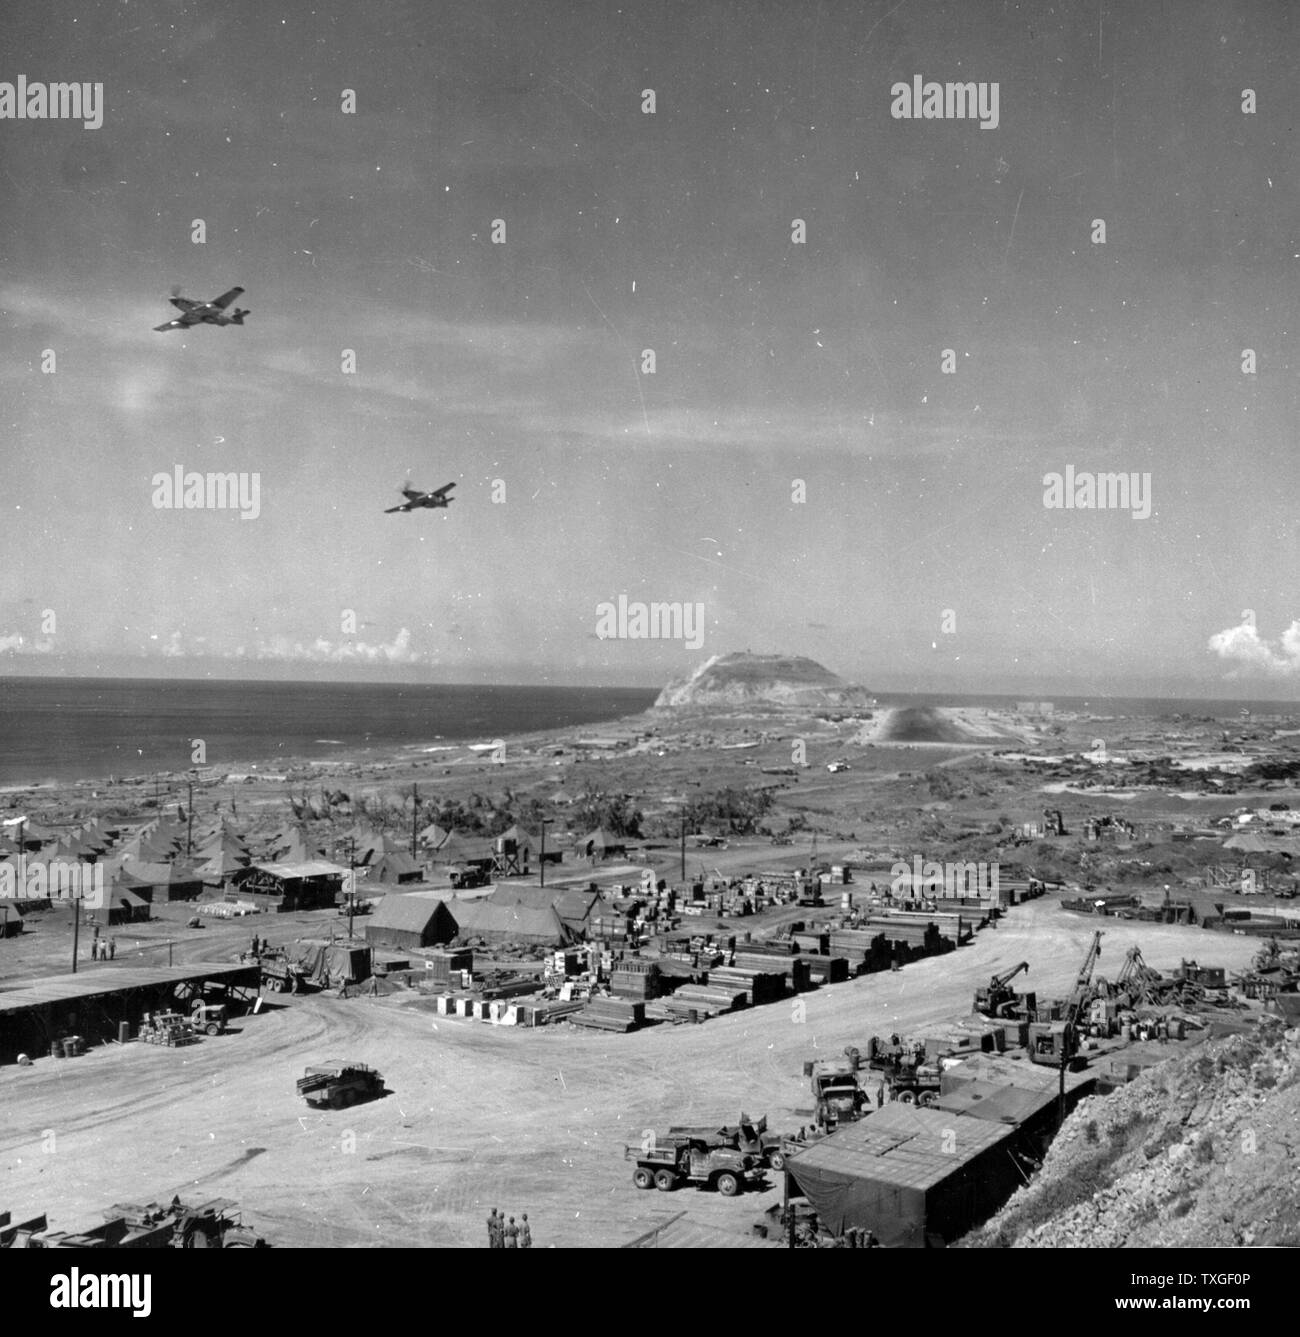 Photographie du 21ème commandement de bombardiers P-51s Flyover dans les îles Bonin Iwo Jima, Japon. Datée 1945 Banque D'Images